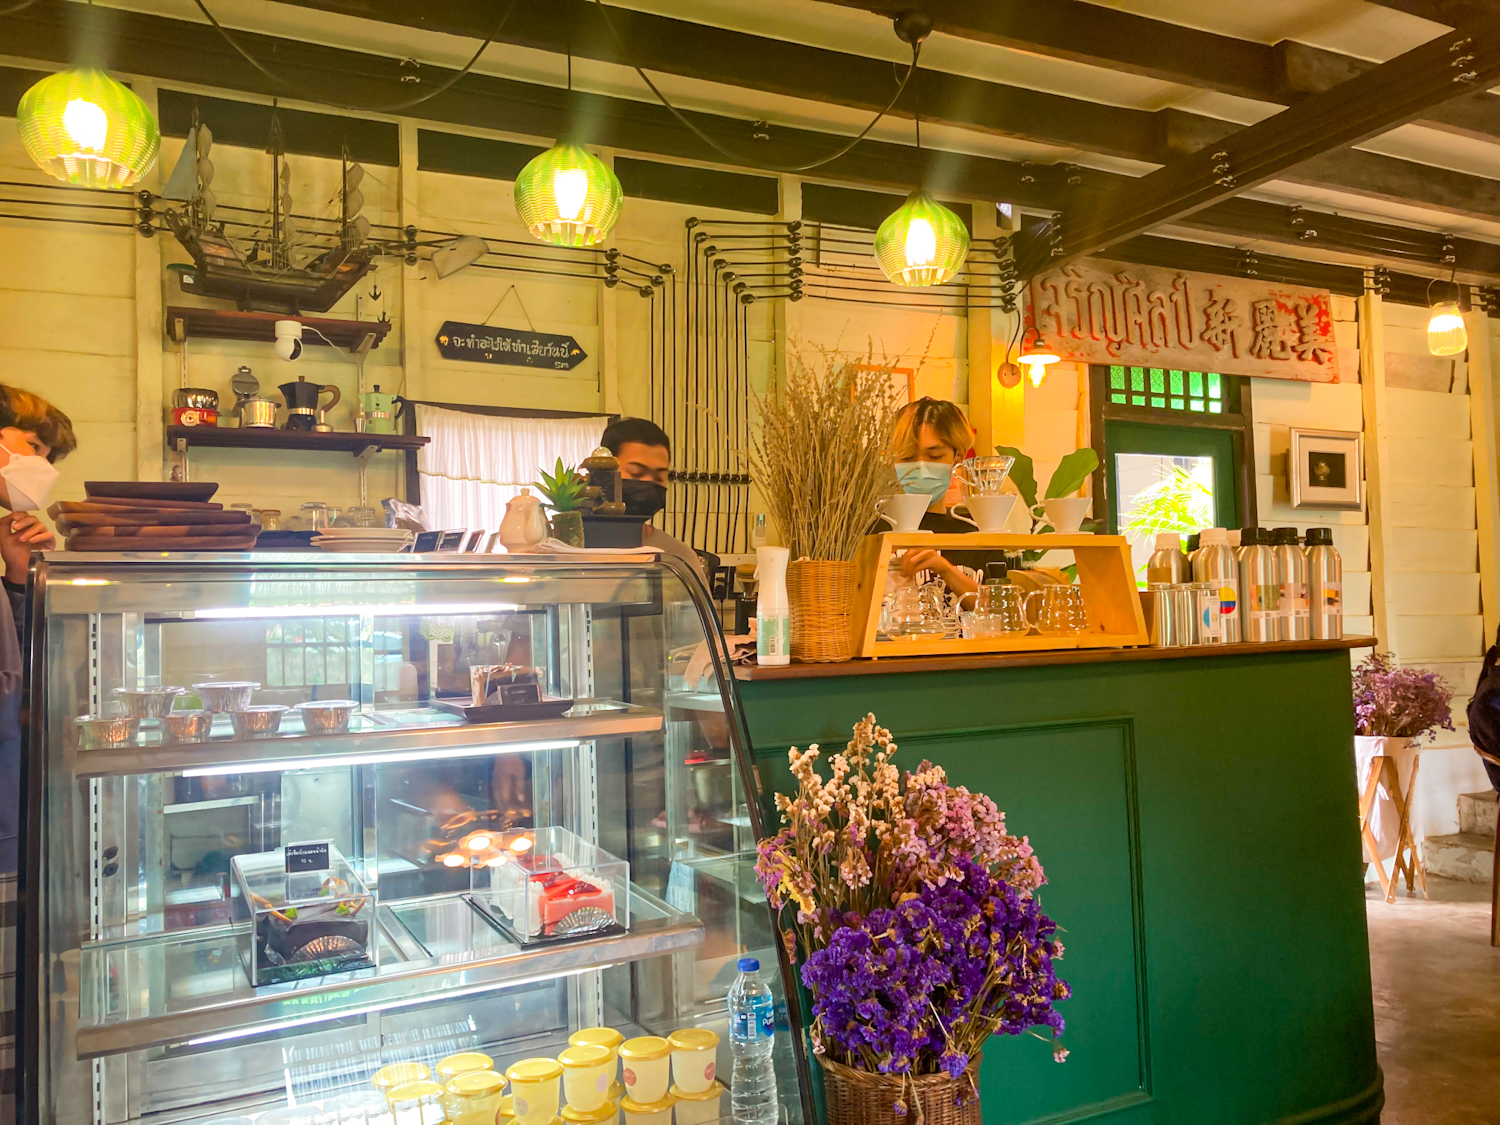 รูปภาพของ Manila Cafe and Eatery ร้านคาเฟ่บ้านไม้เก่า สุดคลาสสิคแห่งเมืองตรัง